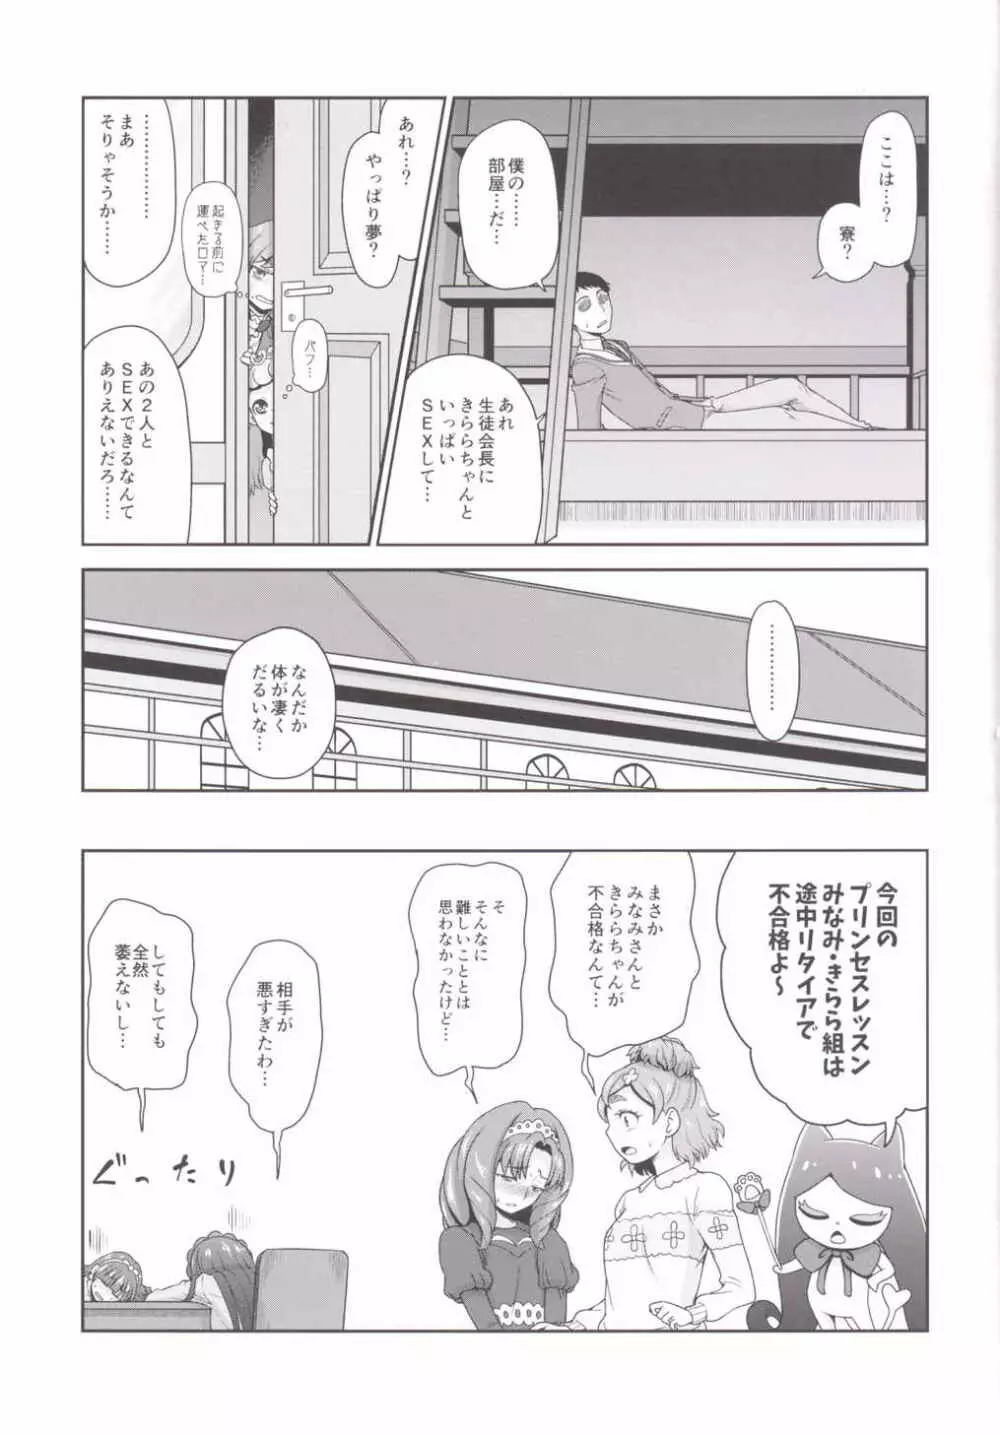 Go! みなきらプリンセスレッスン! - page25